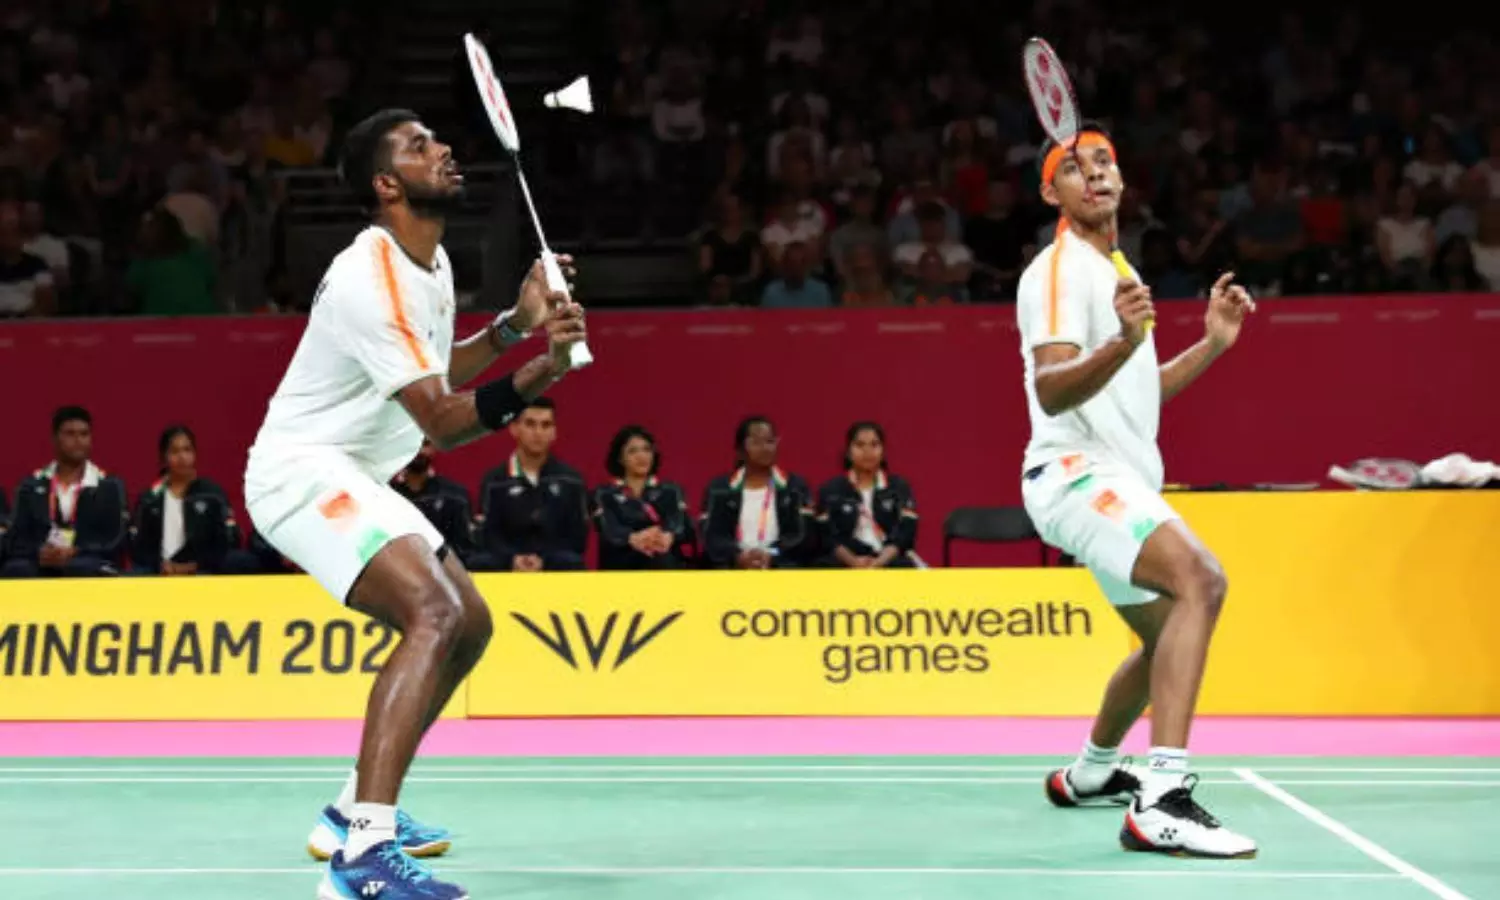 badminton live cwg 2022